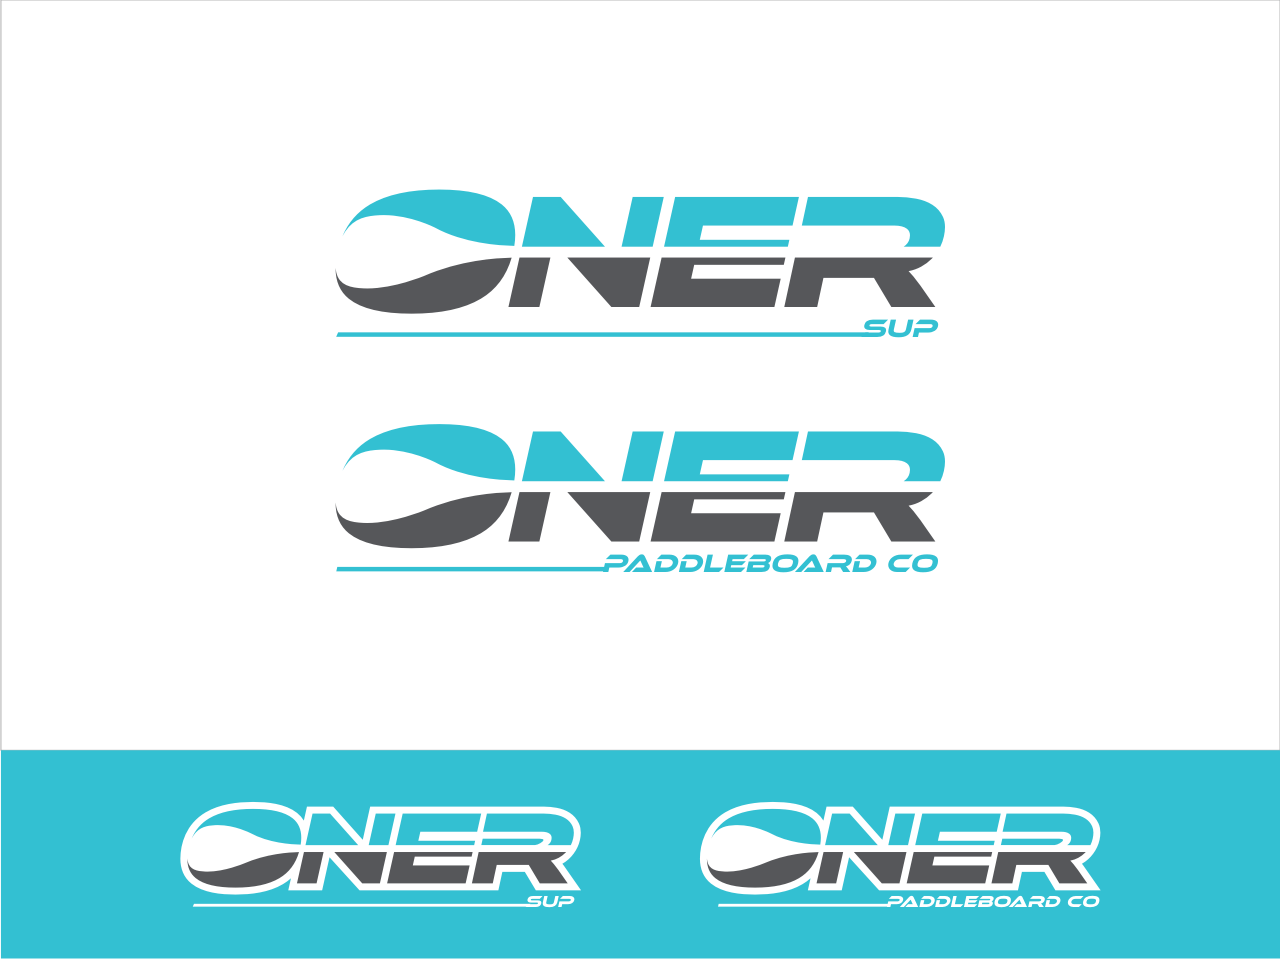 Paddleboard Logo - Logo Design #123 | 'ONER / ONER SUP / ONER PADDLEBOARD CO' design ...